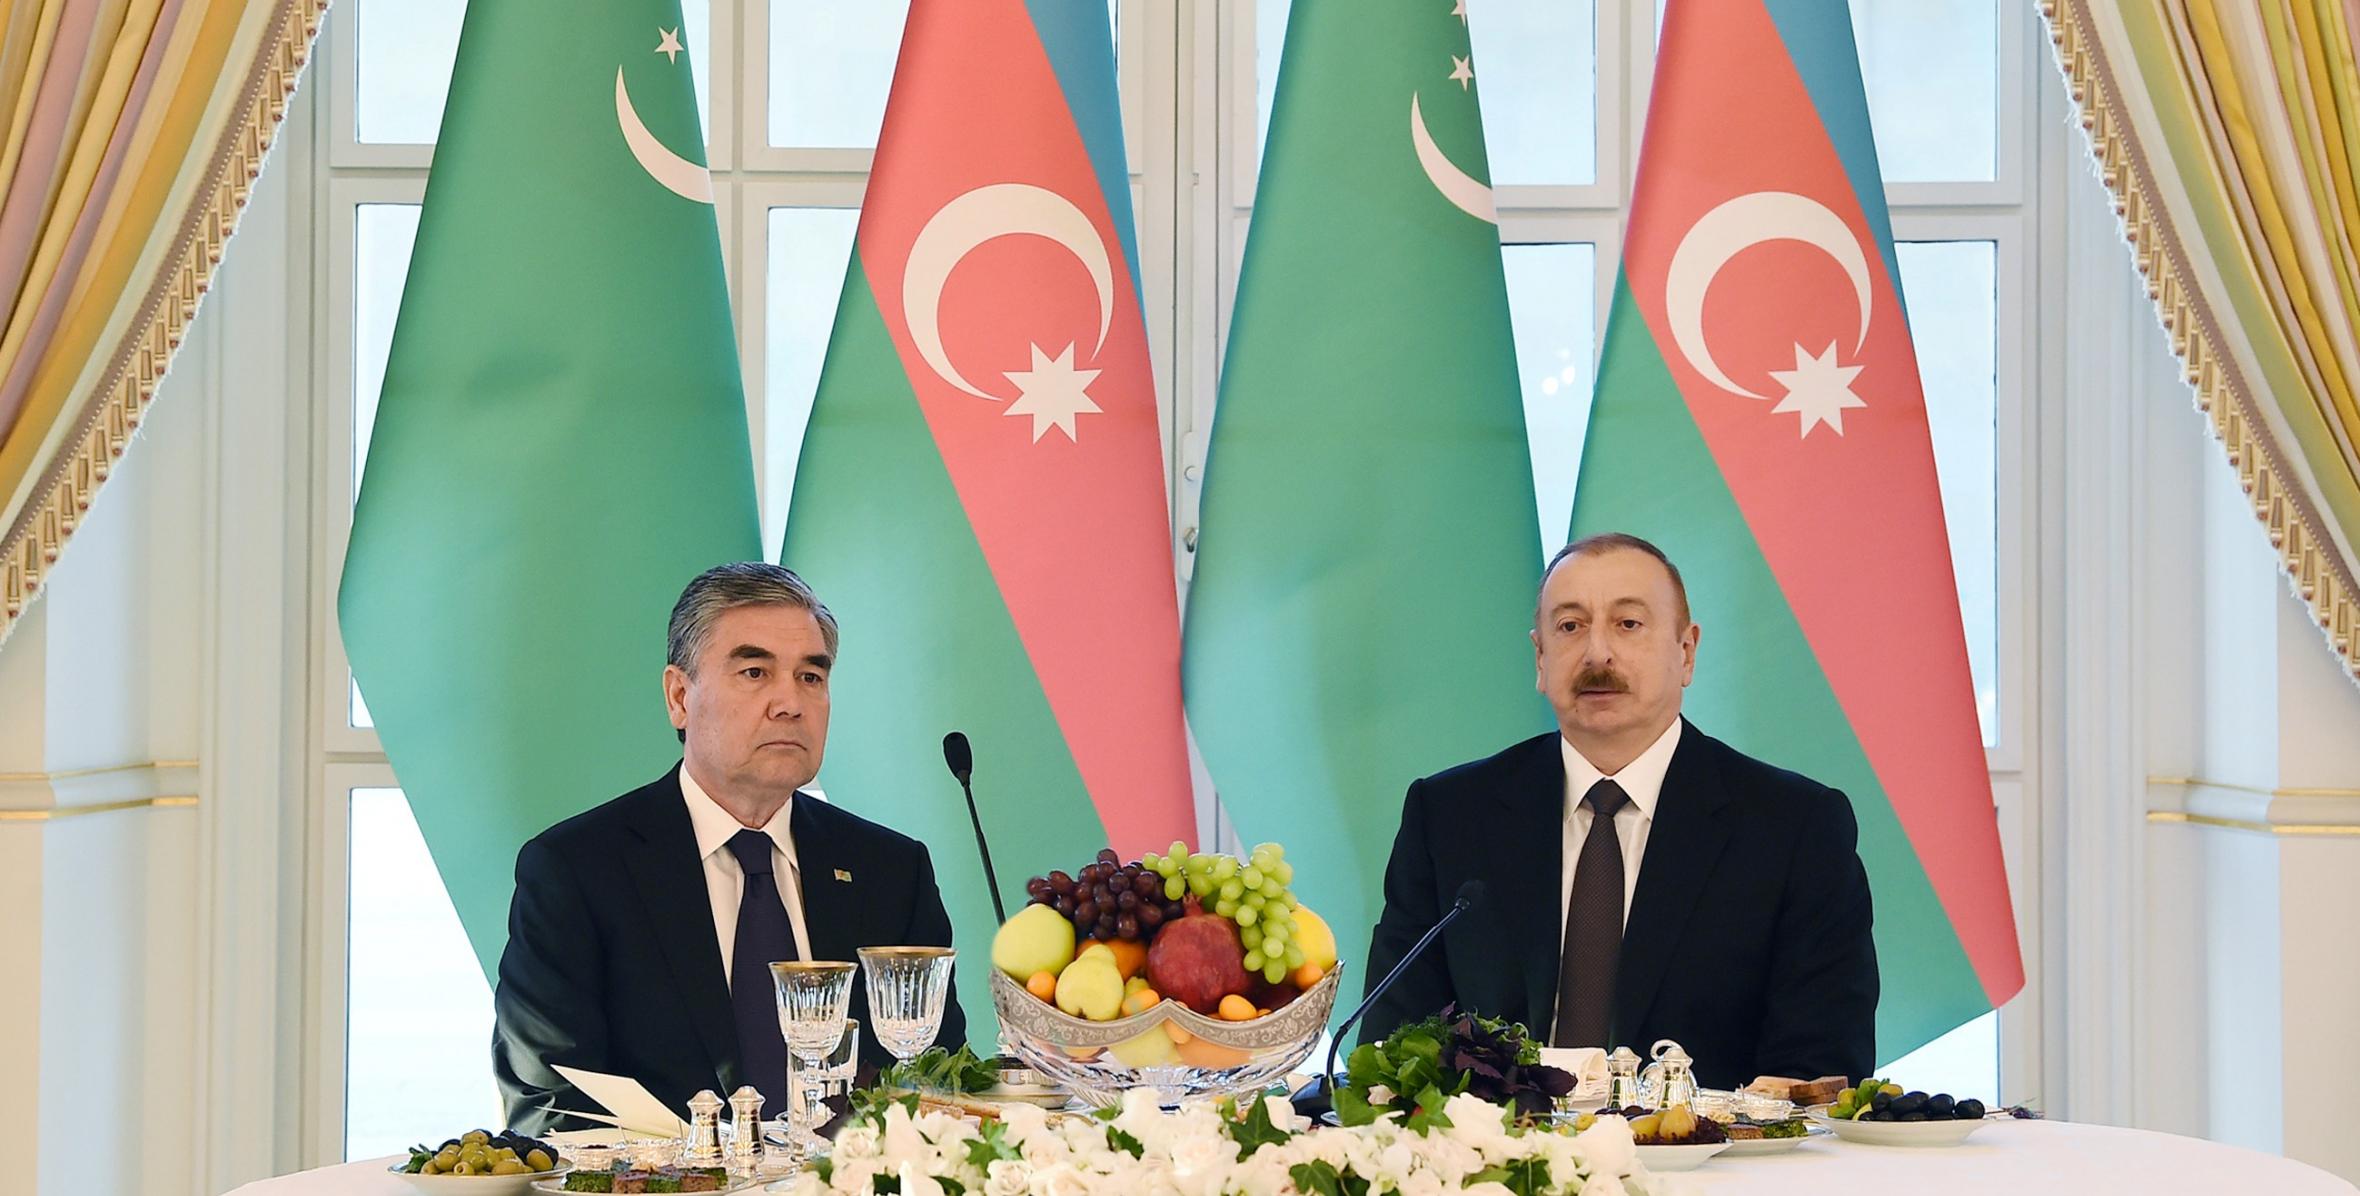 Ильхам Алиев дал официальный прием в честь Президента Туркменистана Гурбангулы Бердымухамедова